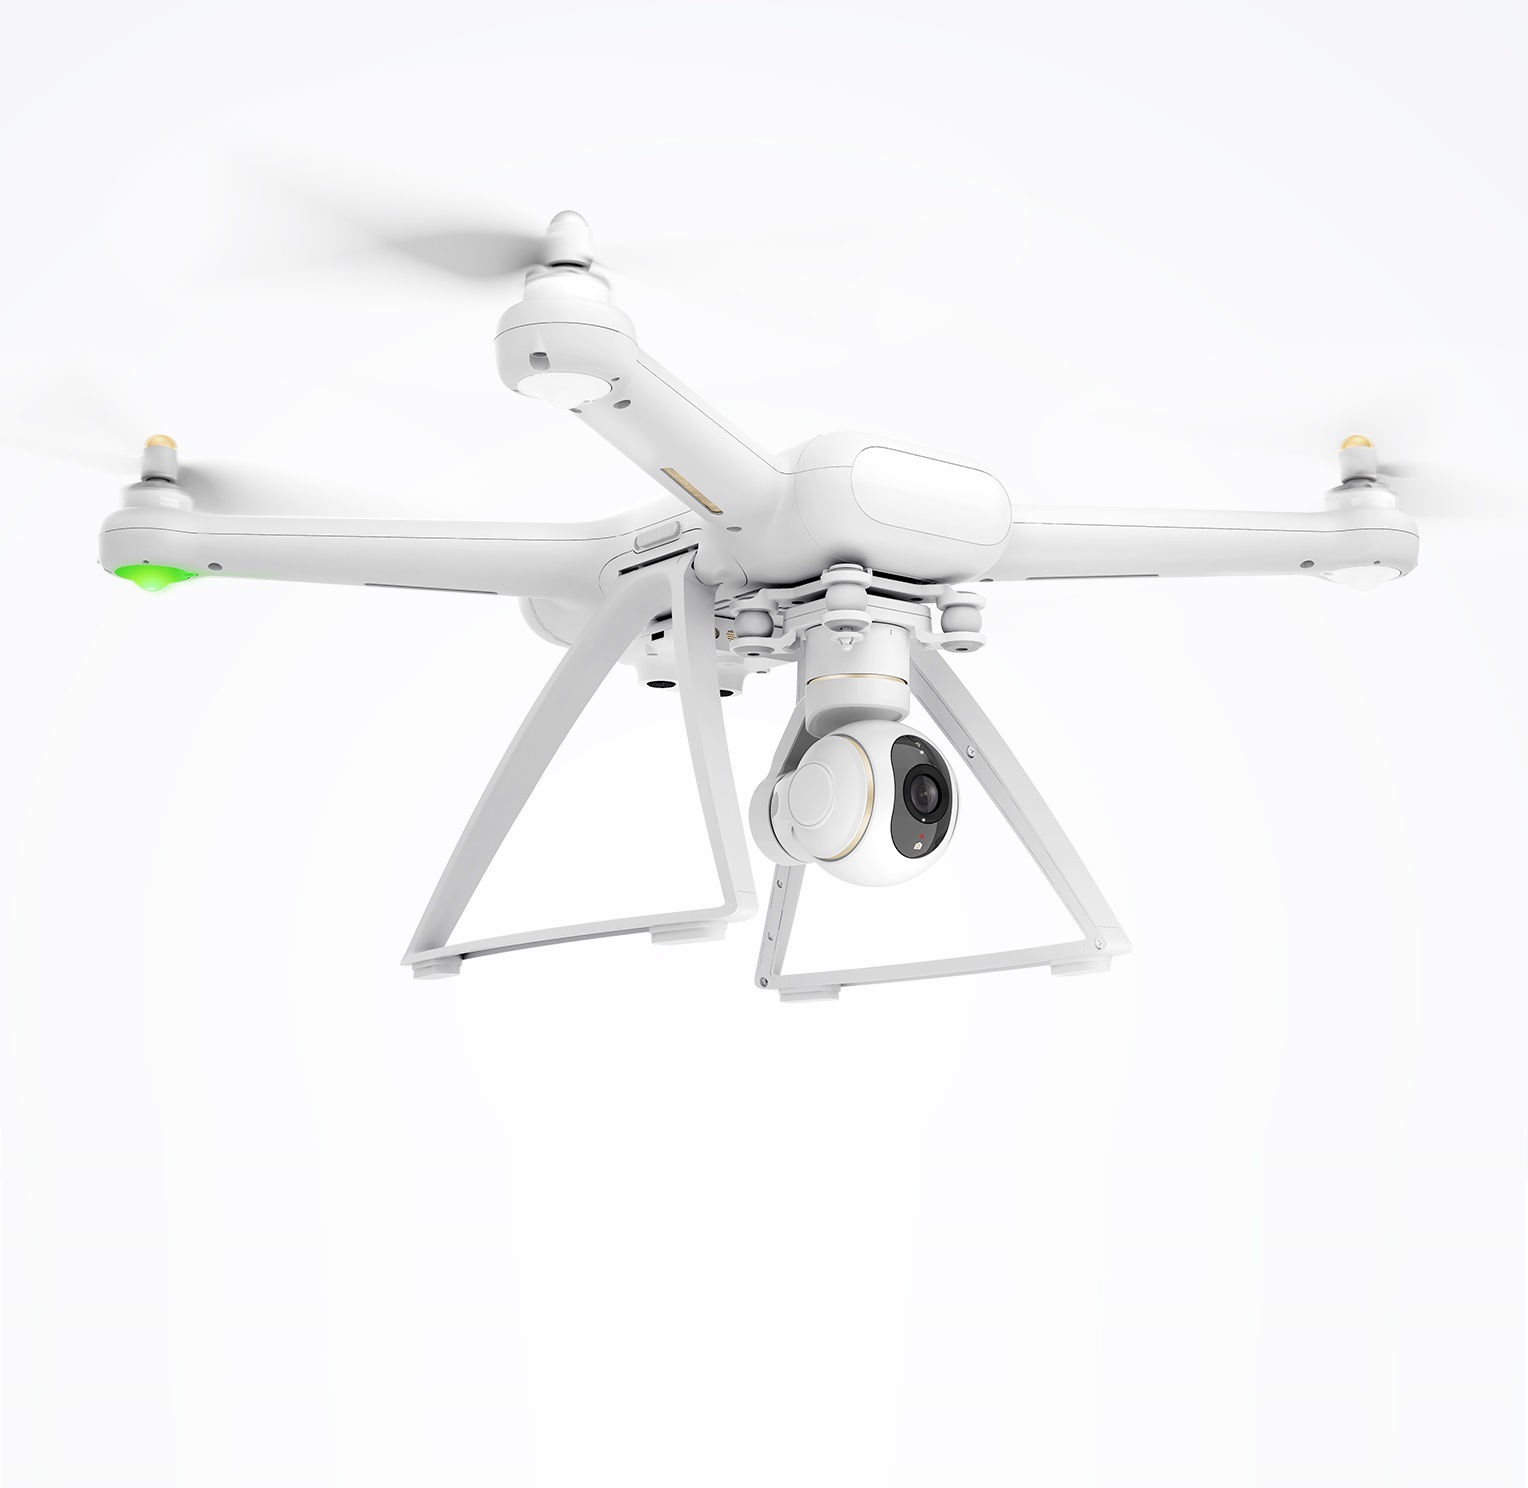 پهپاد شیائومی مدل drone 4k